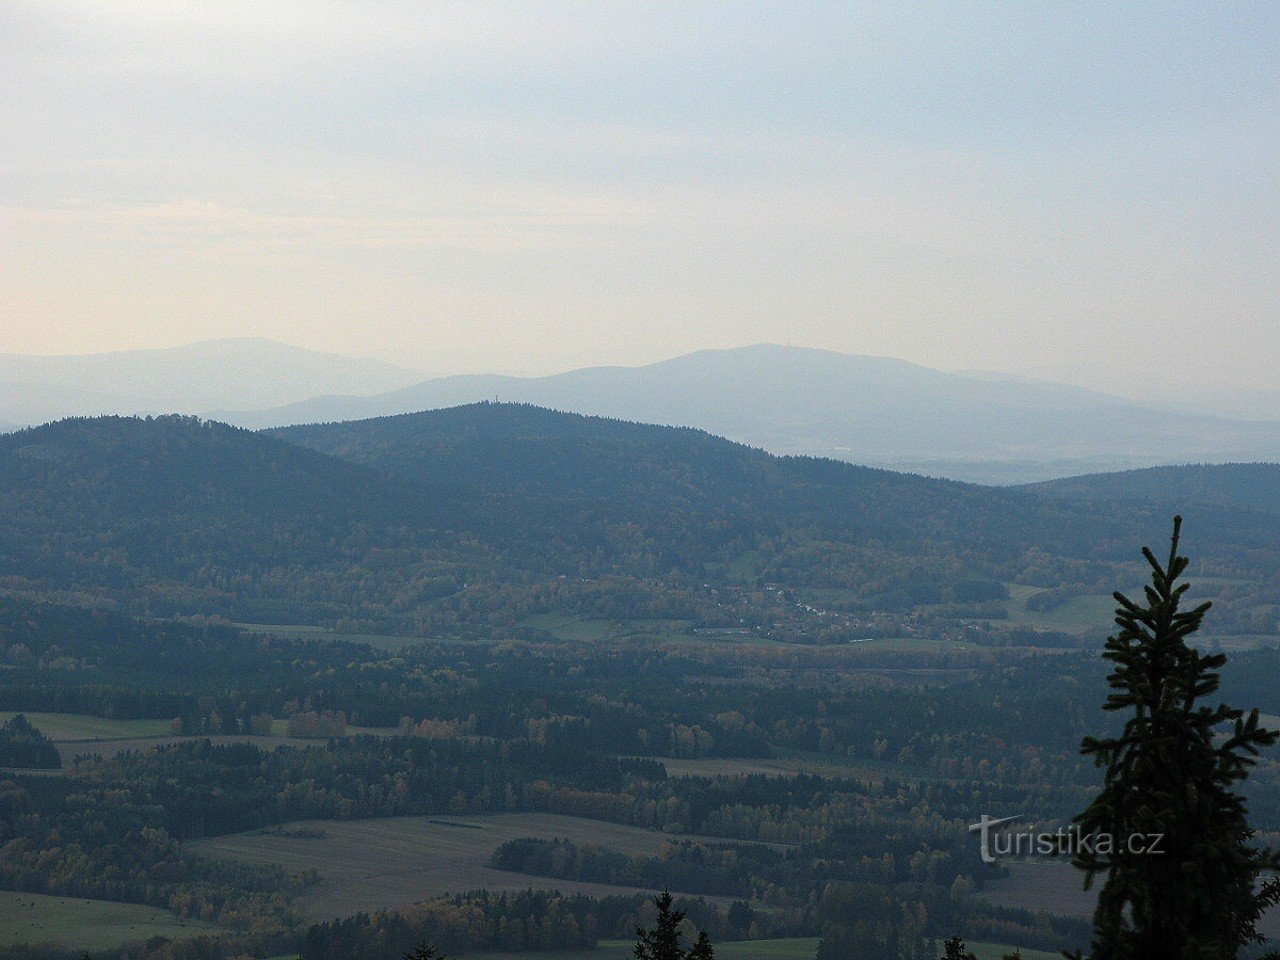 Slepíčí hory từ Kráví hora (Kleť trong nền)